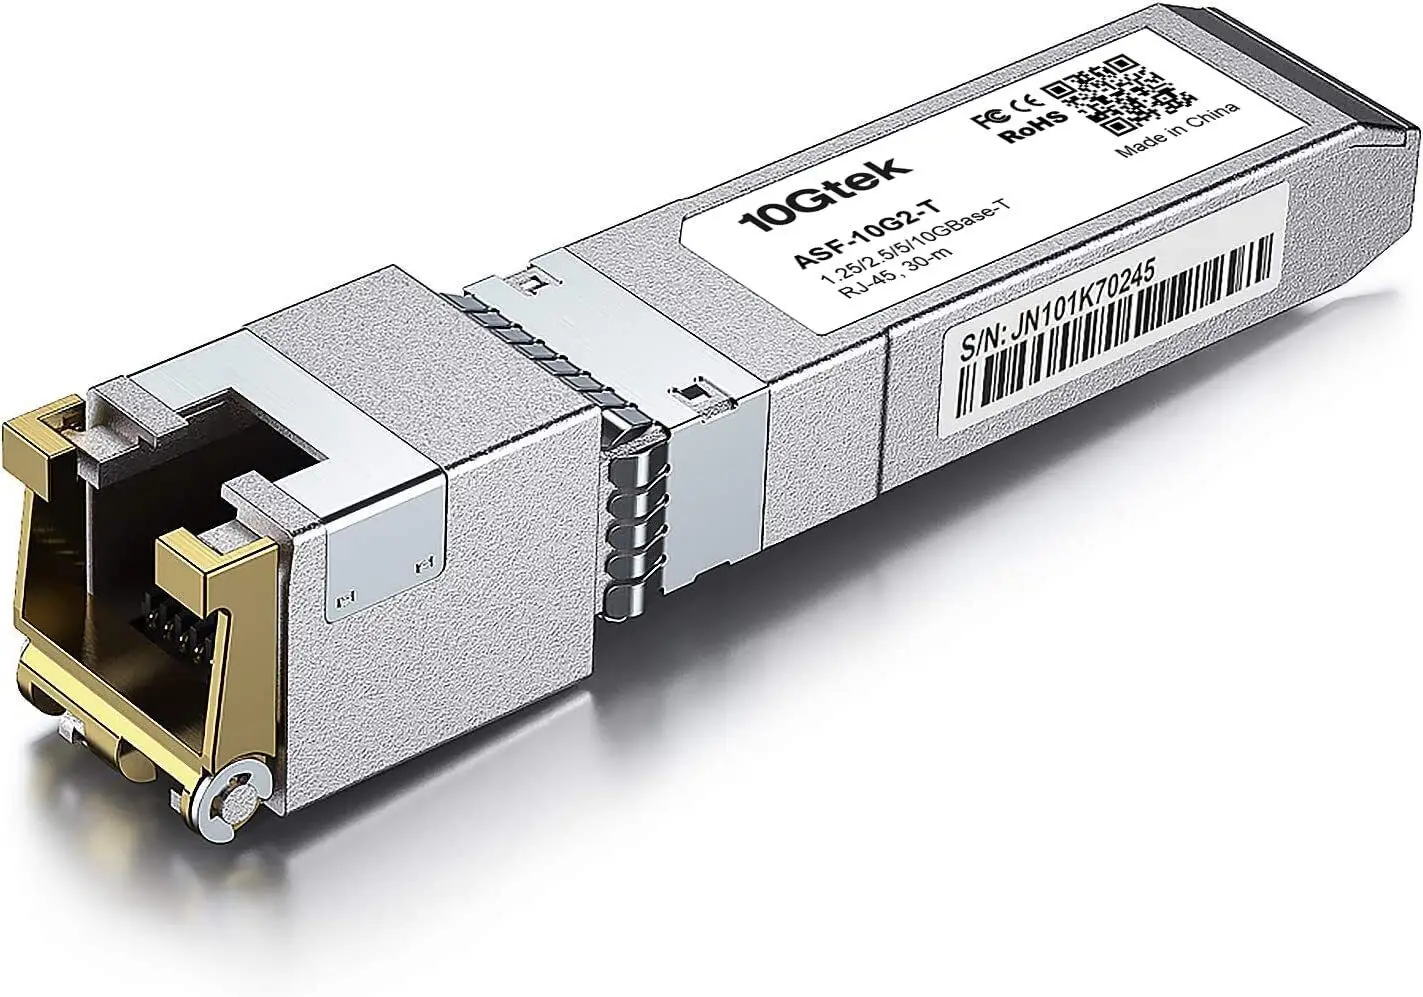 10GBase-T Cisco SFP-10G-T-S Ubiquiti Mikrotik Compatible Transceiver, 10G SFP+ RJ-45 1.25/2.5/5/10G-T CAT.6a Copper Transceiver